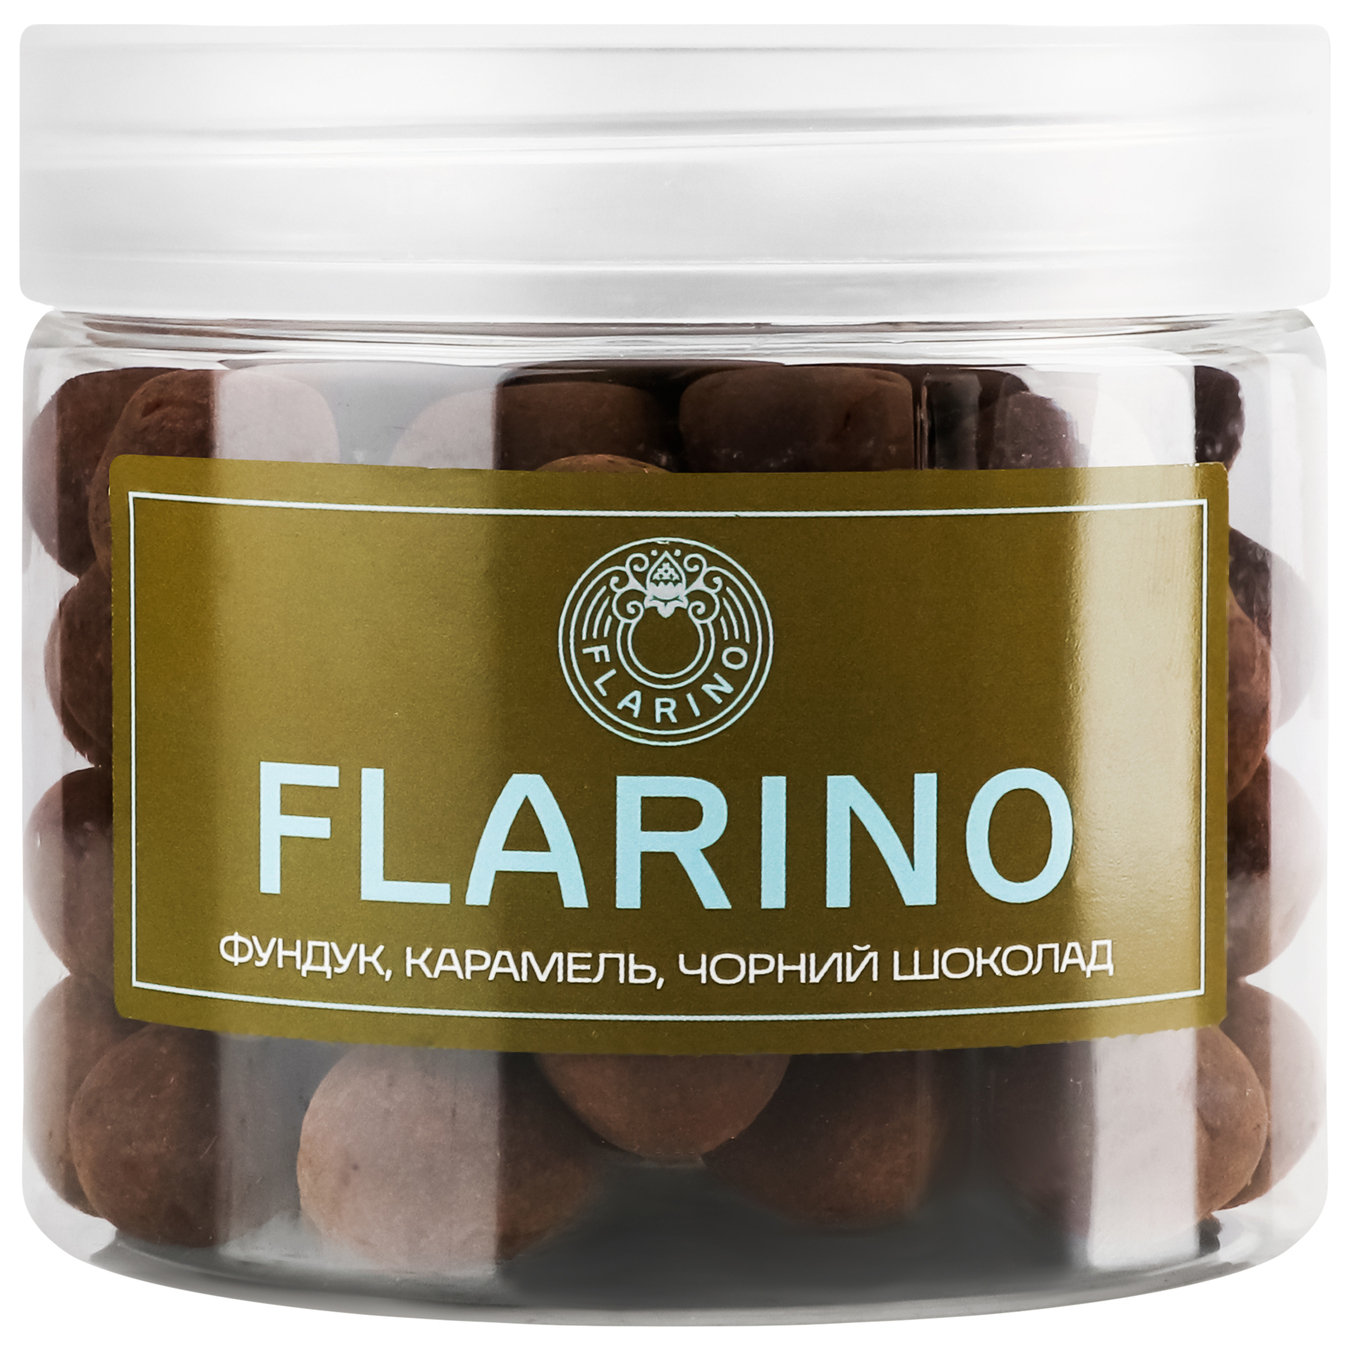 Фундук Flarino в карамеле покрыт черным шоколадом 180г.